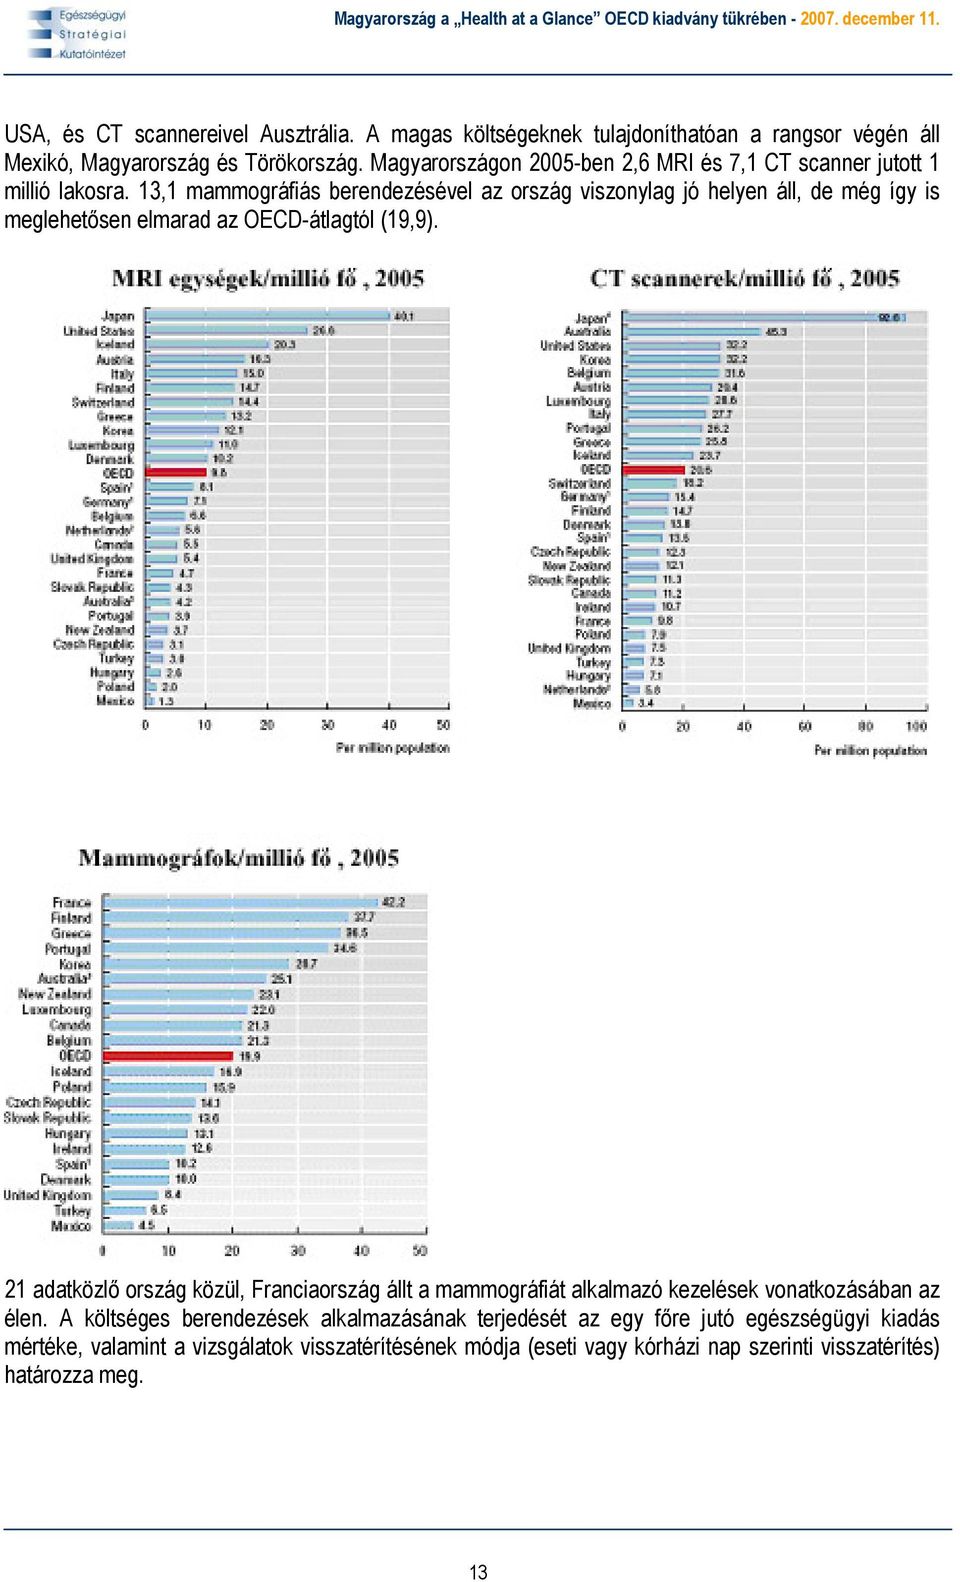 13,1 mammográfiás berendezésével az ország viszonylag jó helyen áll, de még így is meglehetősen elmarad az OECD-átlagtól (19,9).